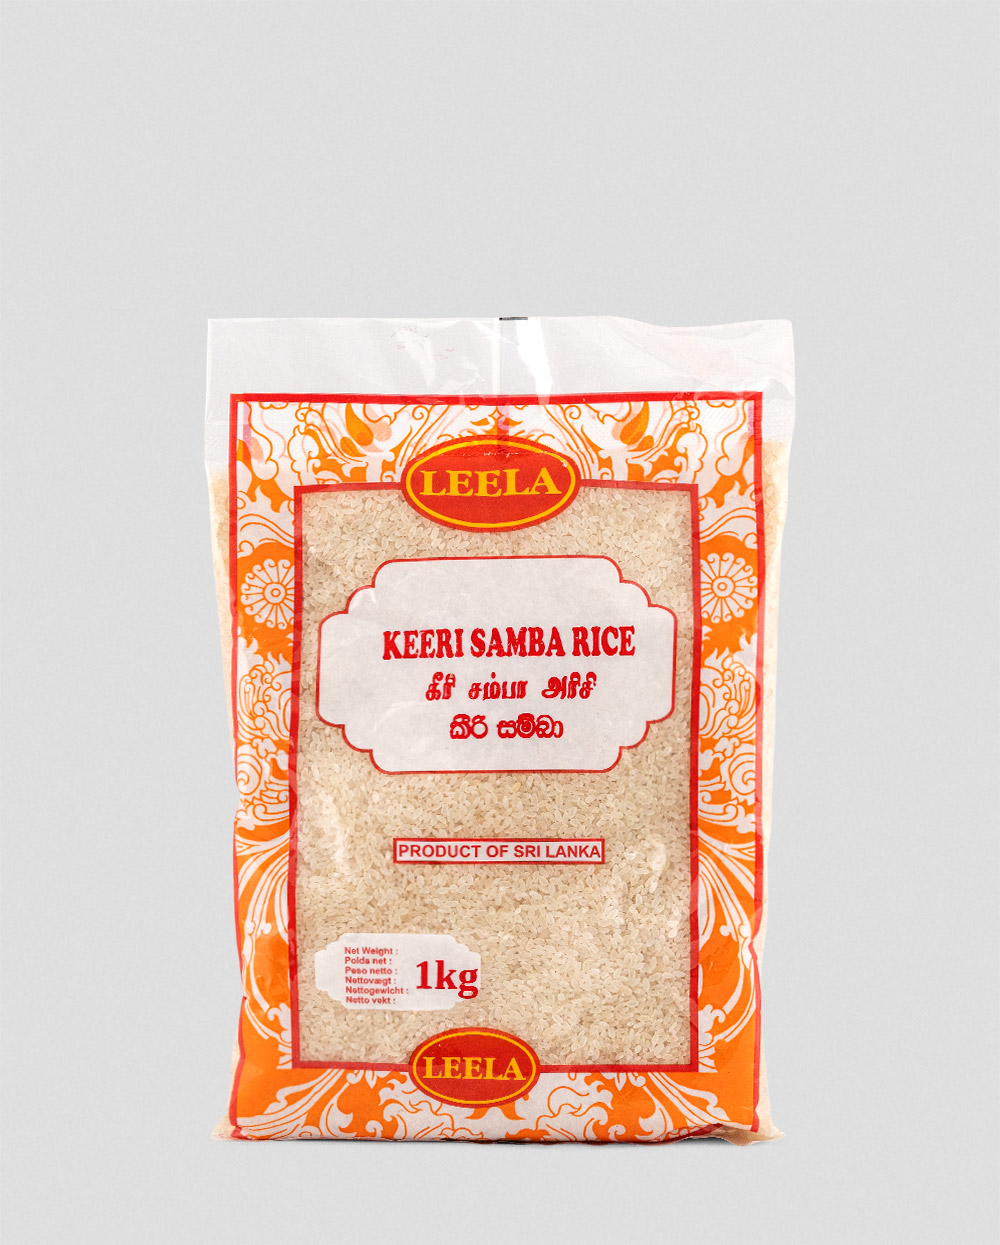 Leela Keeri Samba Rice